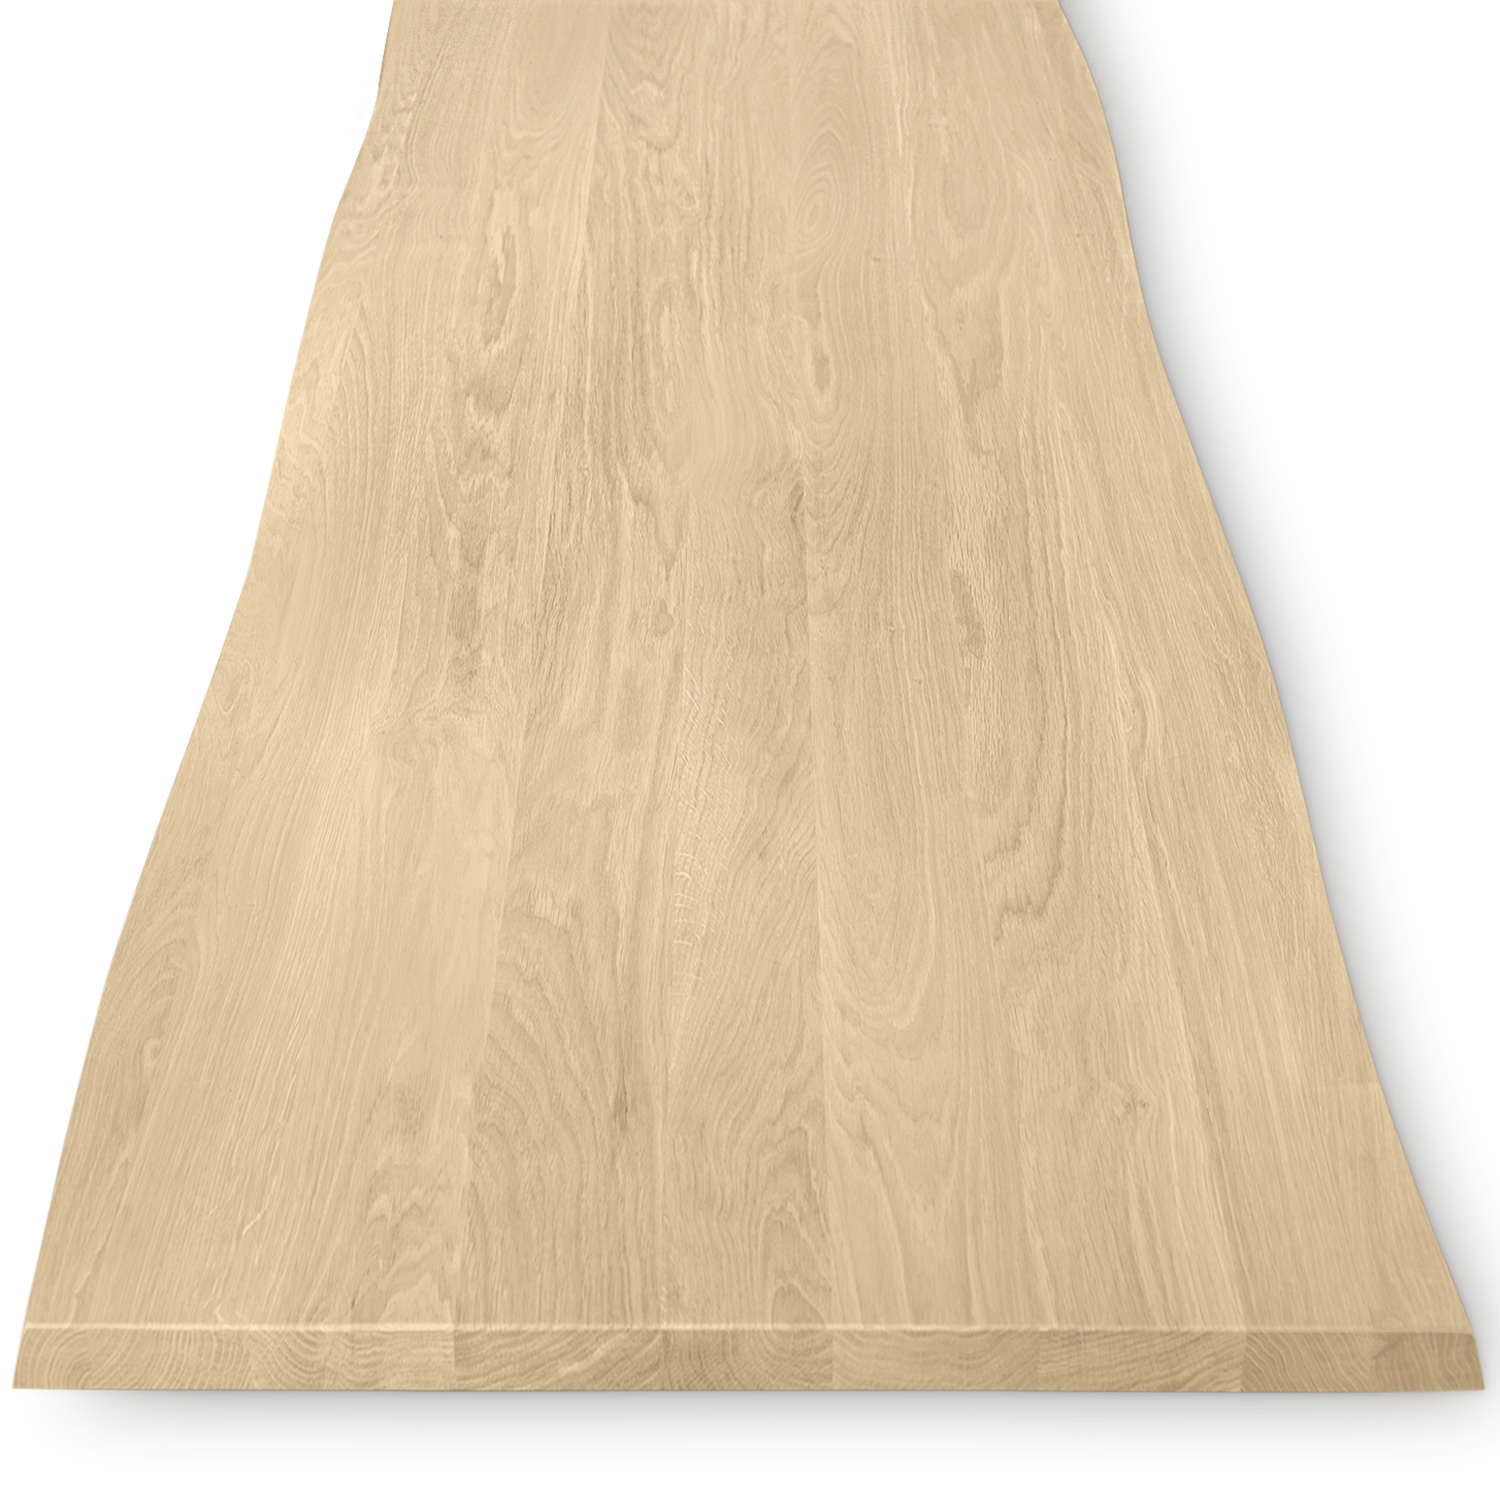  Eiken boomstam tafelblad - 2,7 cm dik (1-laag) - Diverse afmetingen - met boomstam rand / waankant look - foutvrij Europees eikenhout - met brede lamellen (circa 10-12 cm) - verlijmd kd 8-12%